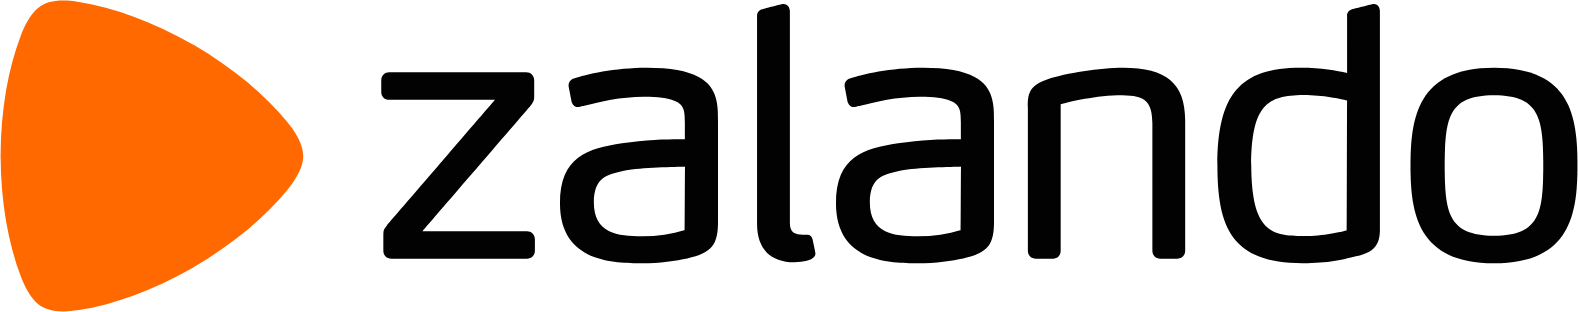 Zalando logo large (transparent PNG)